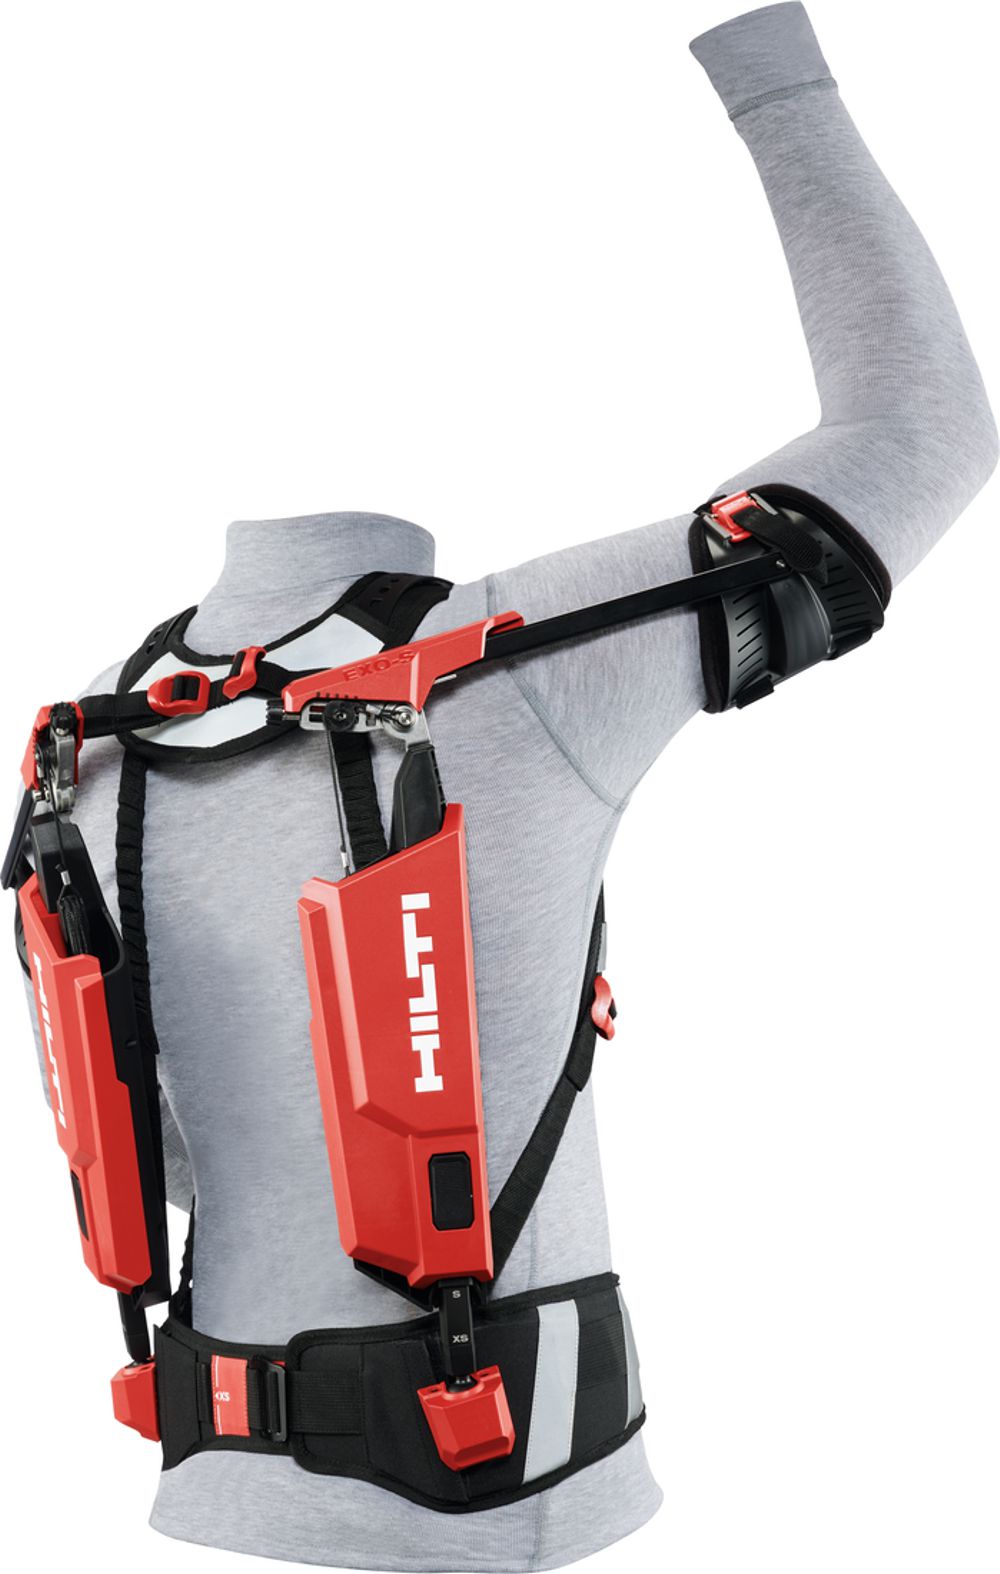 Hilti upgrades their innovative EXO-S Exoskeleton